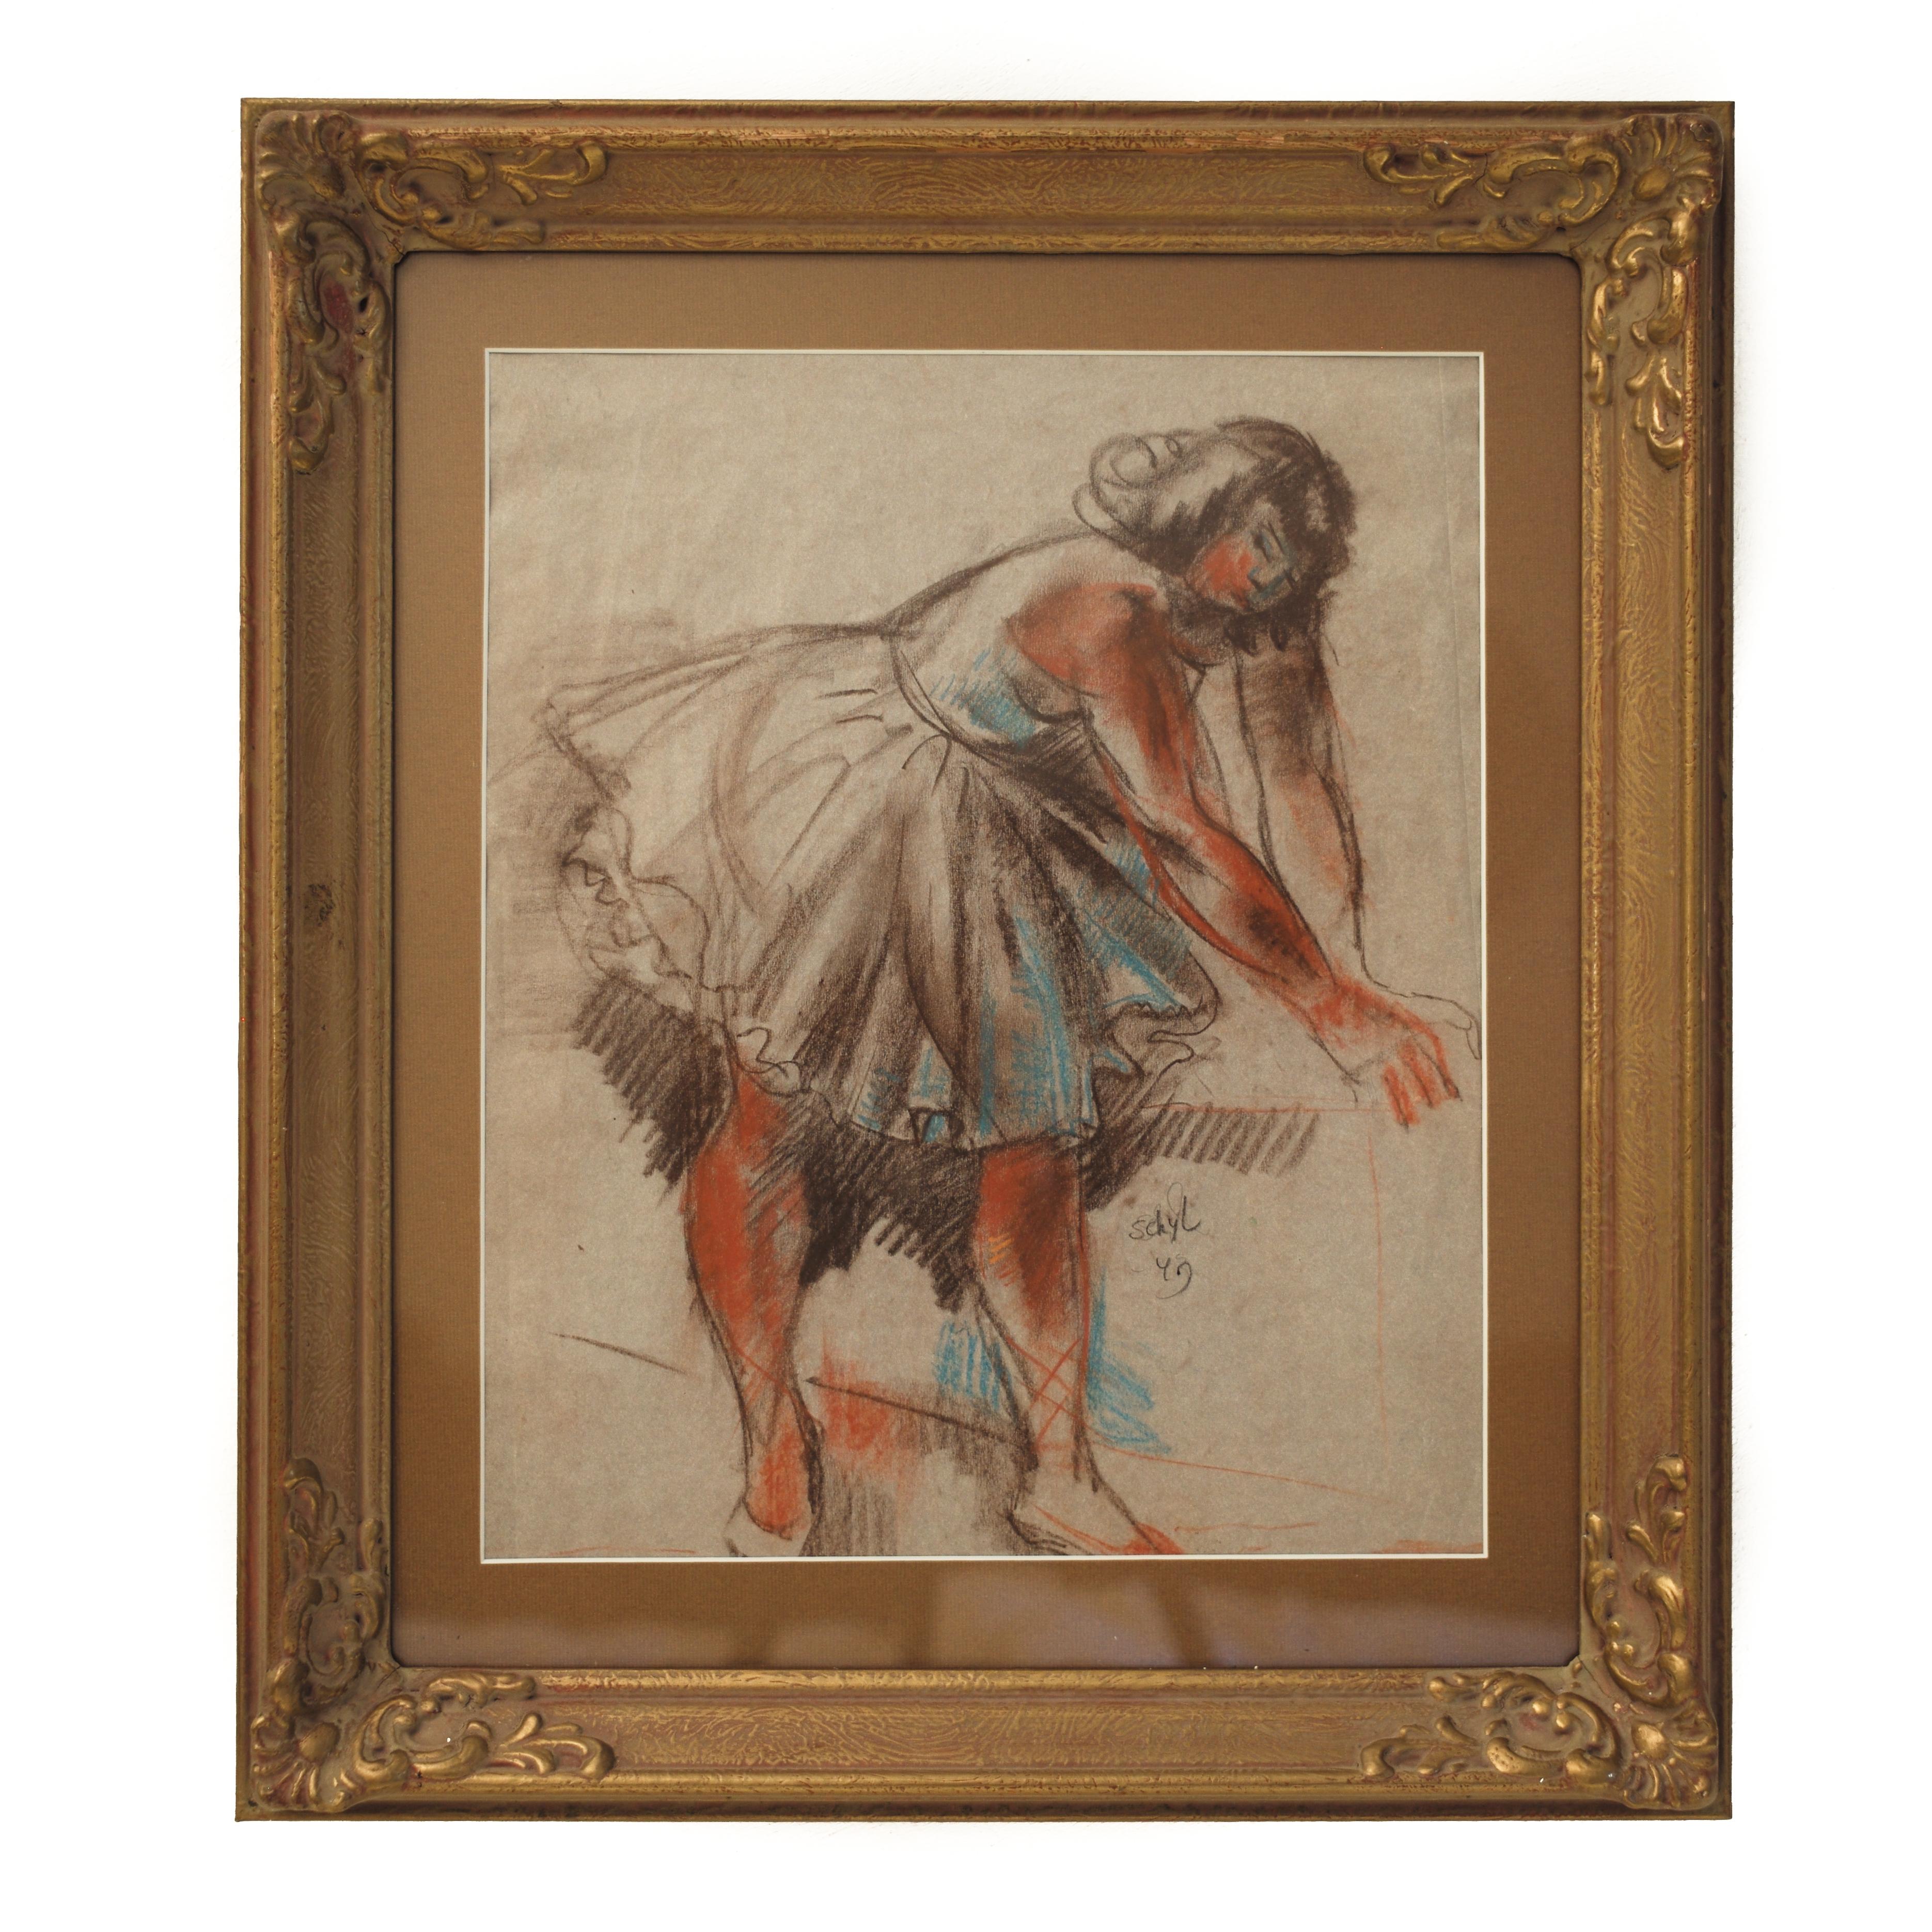 La danseuse de ballet de Jules Schyl, pastel sur papier, similitudes avec Degas